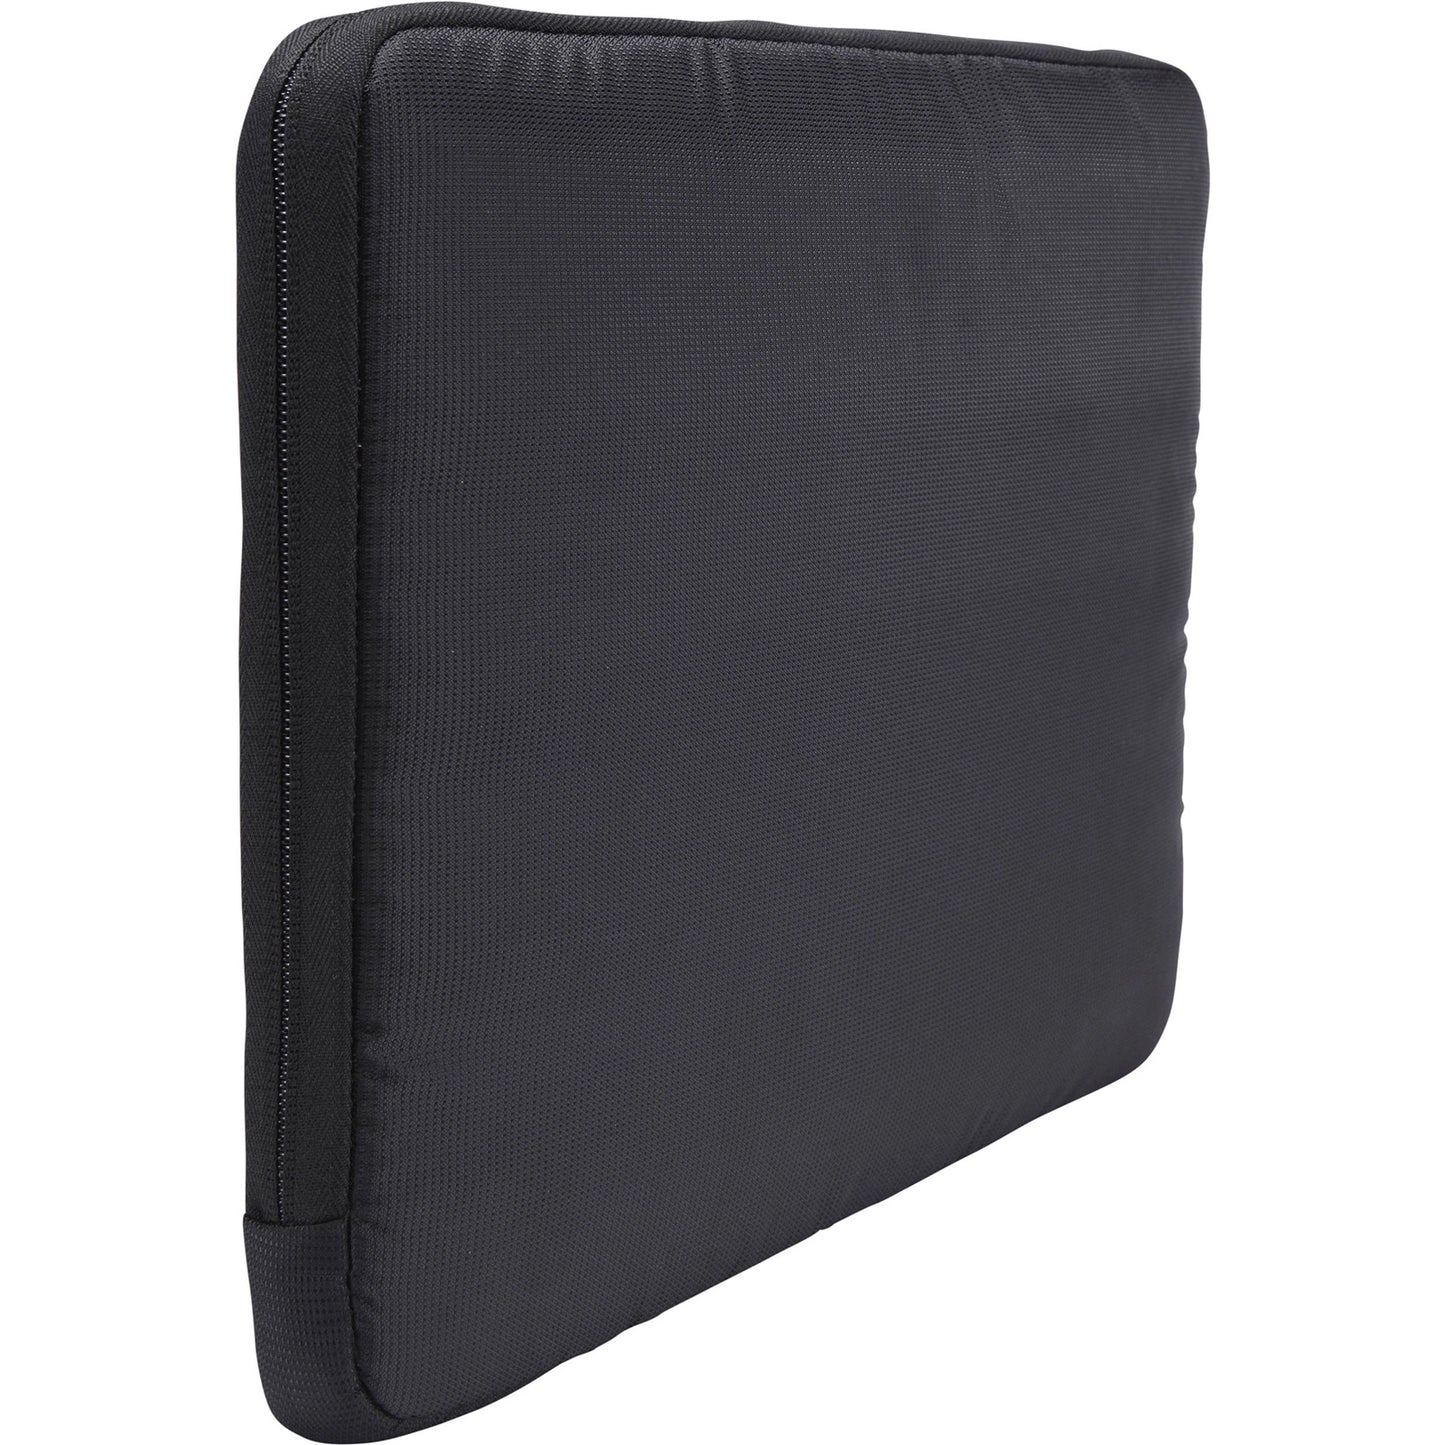 Case Logic TS-115 Sleeve 15.6" LAPTOP SLEEVE w/ front zipper pocket fits an iPad/10.1" tablet - Black